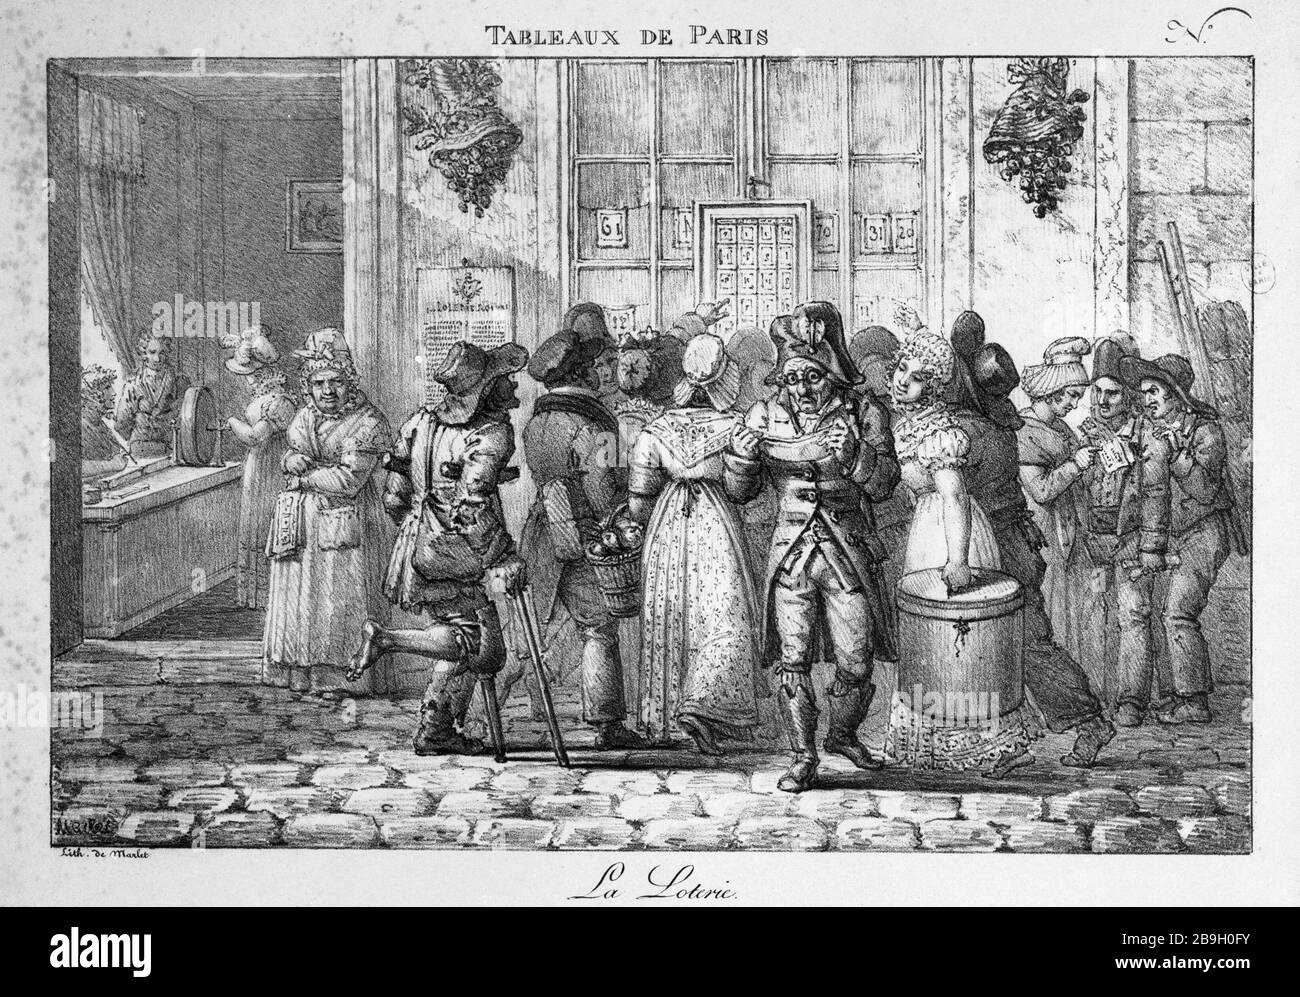 TAVOLI DI PARIGI: LA LOTTERIA 'Tableaux de Paris, n°40 : la loterie' par Marlet. Gravure. Parigi, musée Carnavalet. Foto Stock